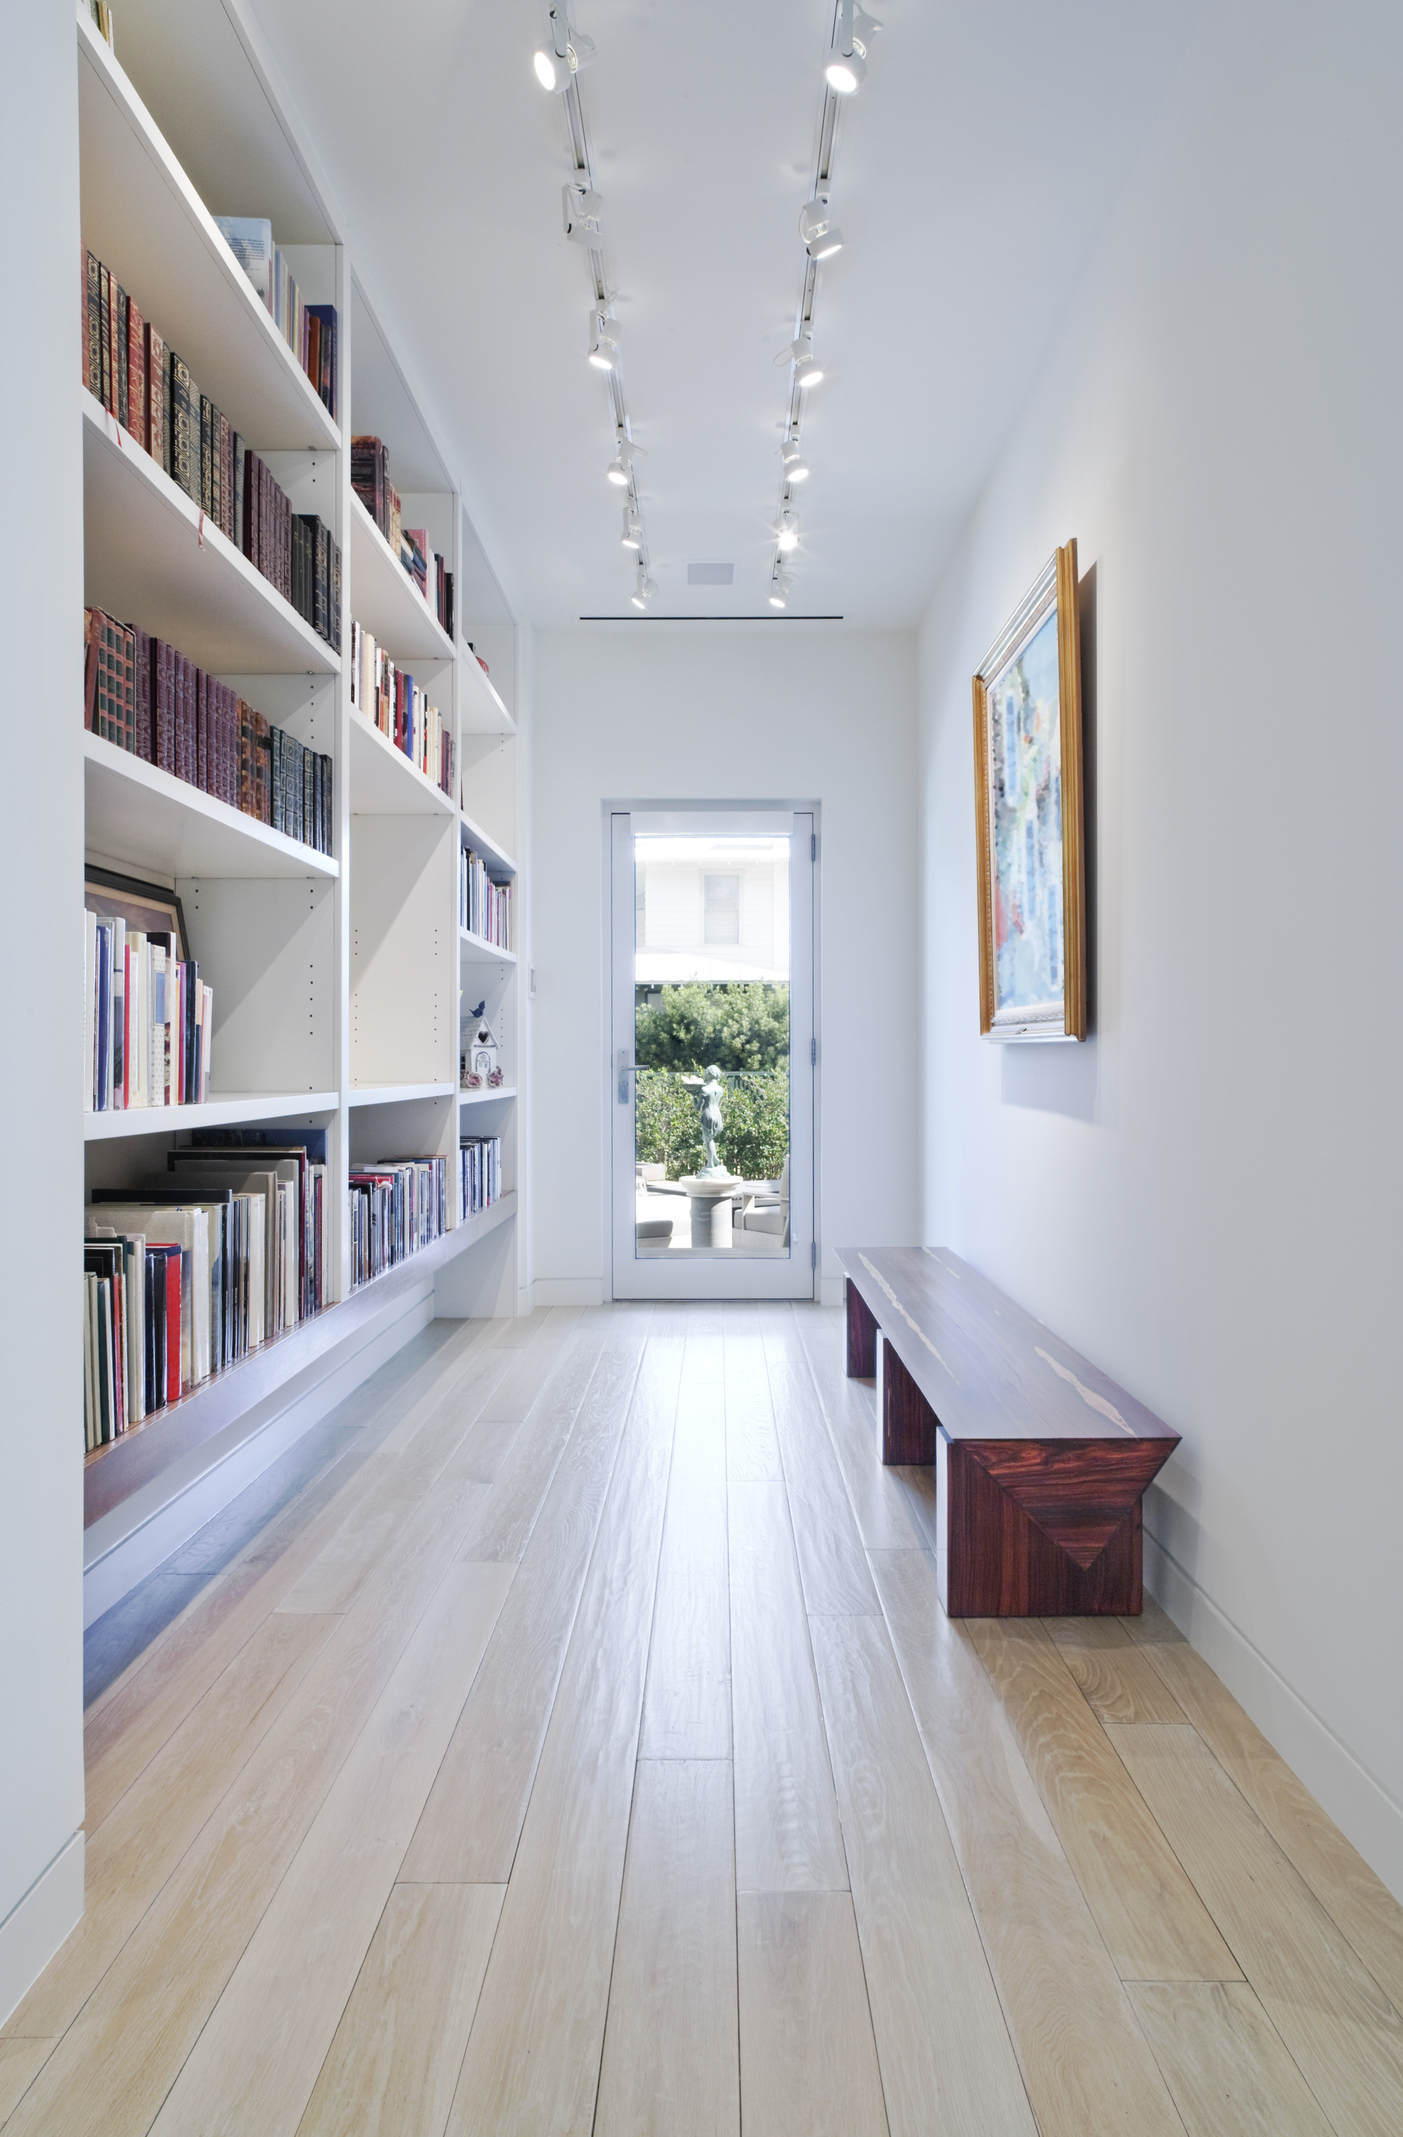 Foto de um corredor longo que tem de um lado da parede uma estante de livros e do outro uma banqueta. Há também na imagem um quadro perto da banqueta.